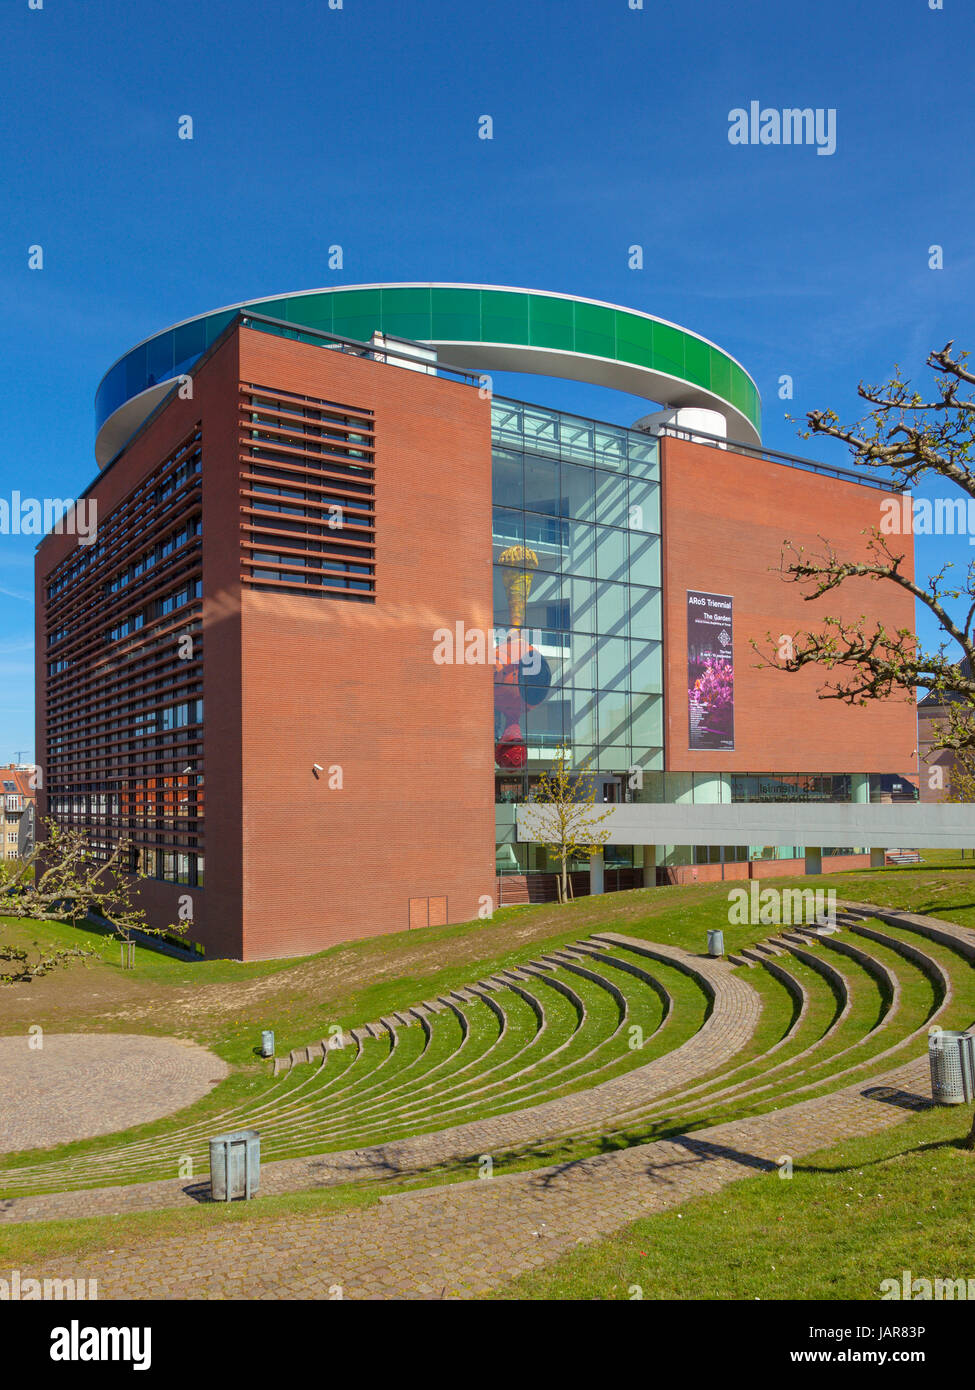 Aarhus, Danemark - 2 mai 2017 : l'aros aarhus, musée d'art moderne avec son installation accessible par Olafur Eliasson au sommet, vue à partir de l'Est. Banque D'Images